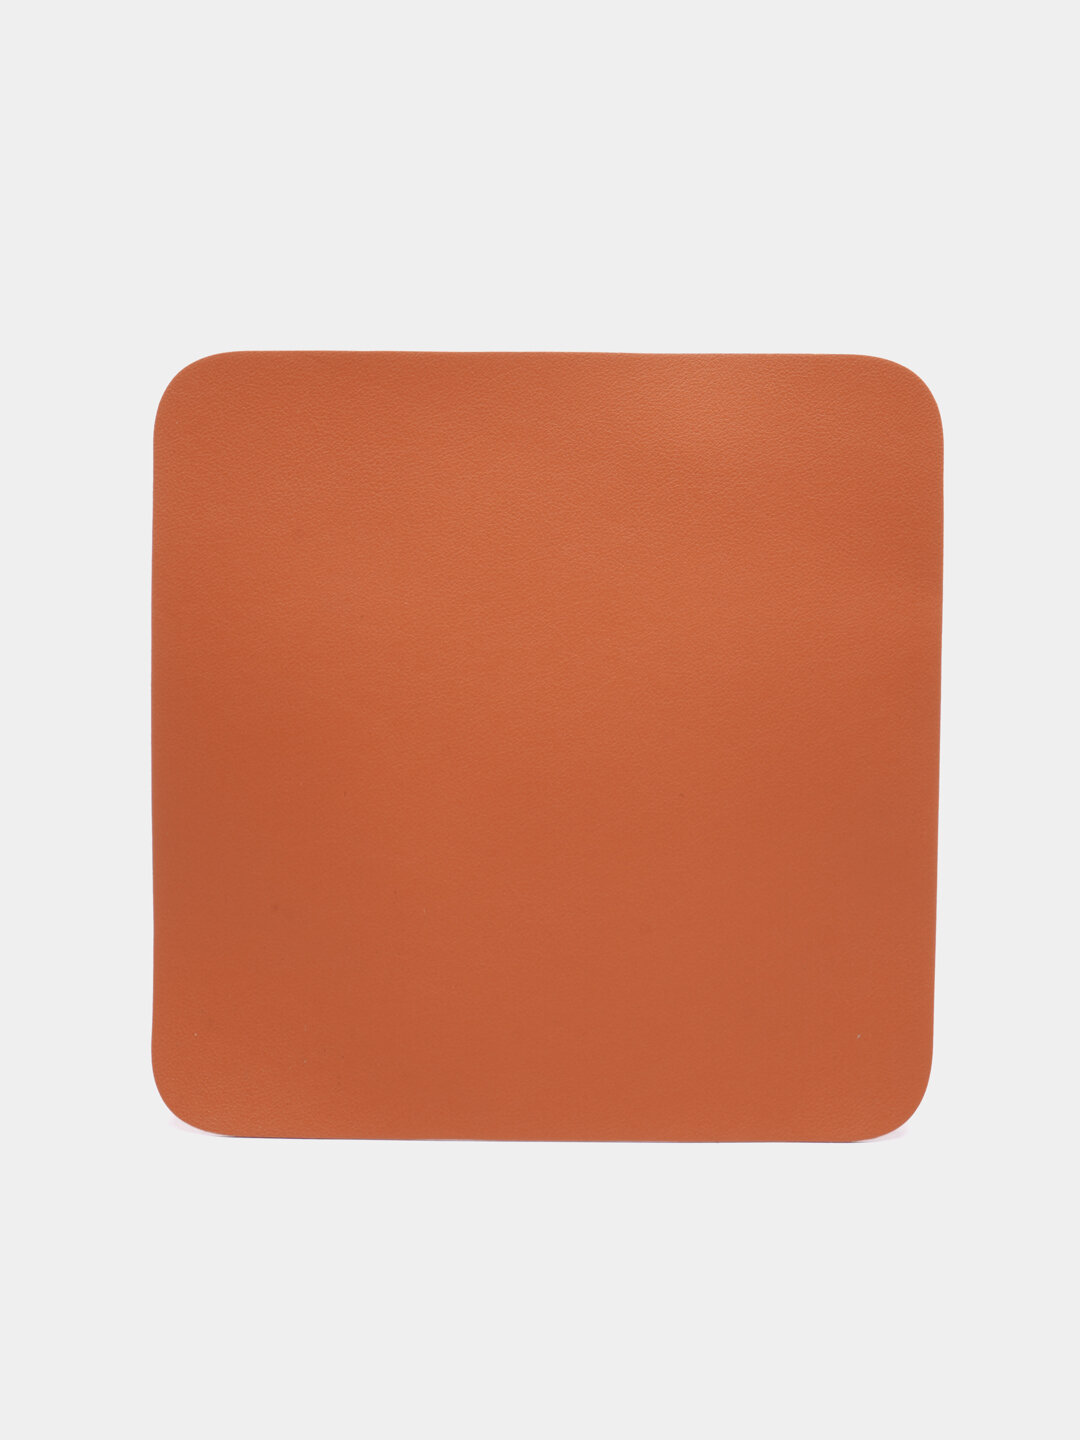 Коврик для мыши из эко-кожи Цвет Оранжевый Размер 22x22 см